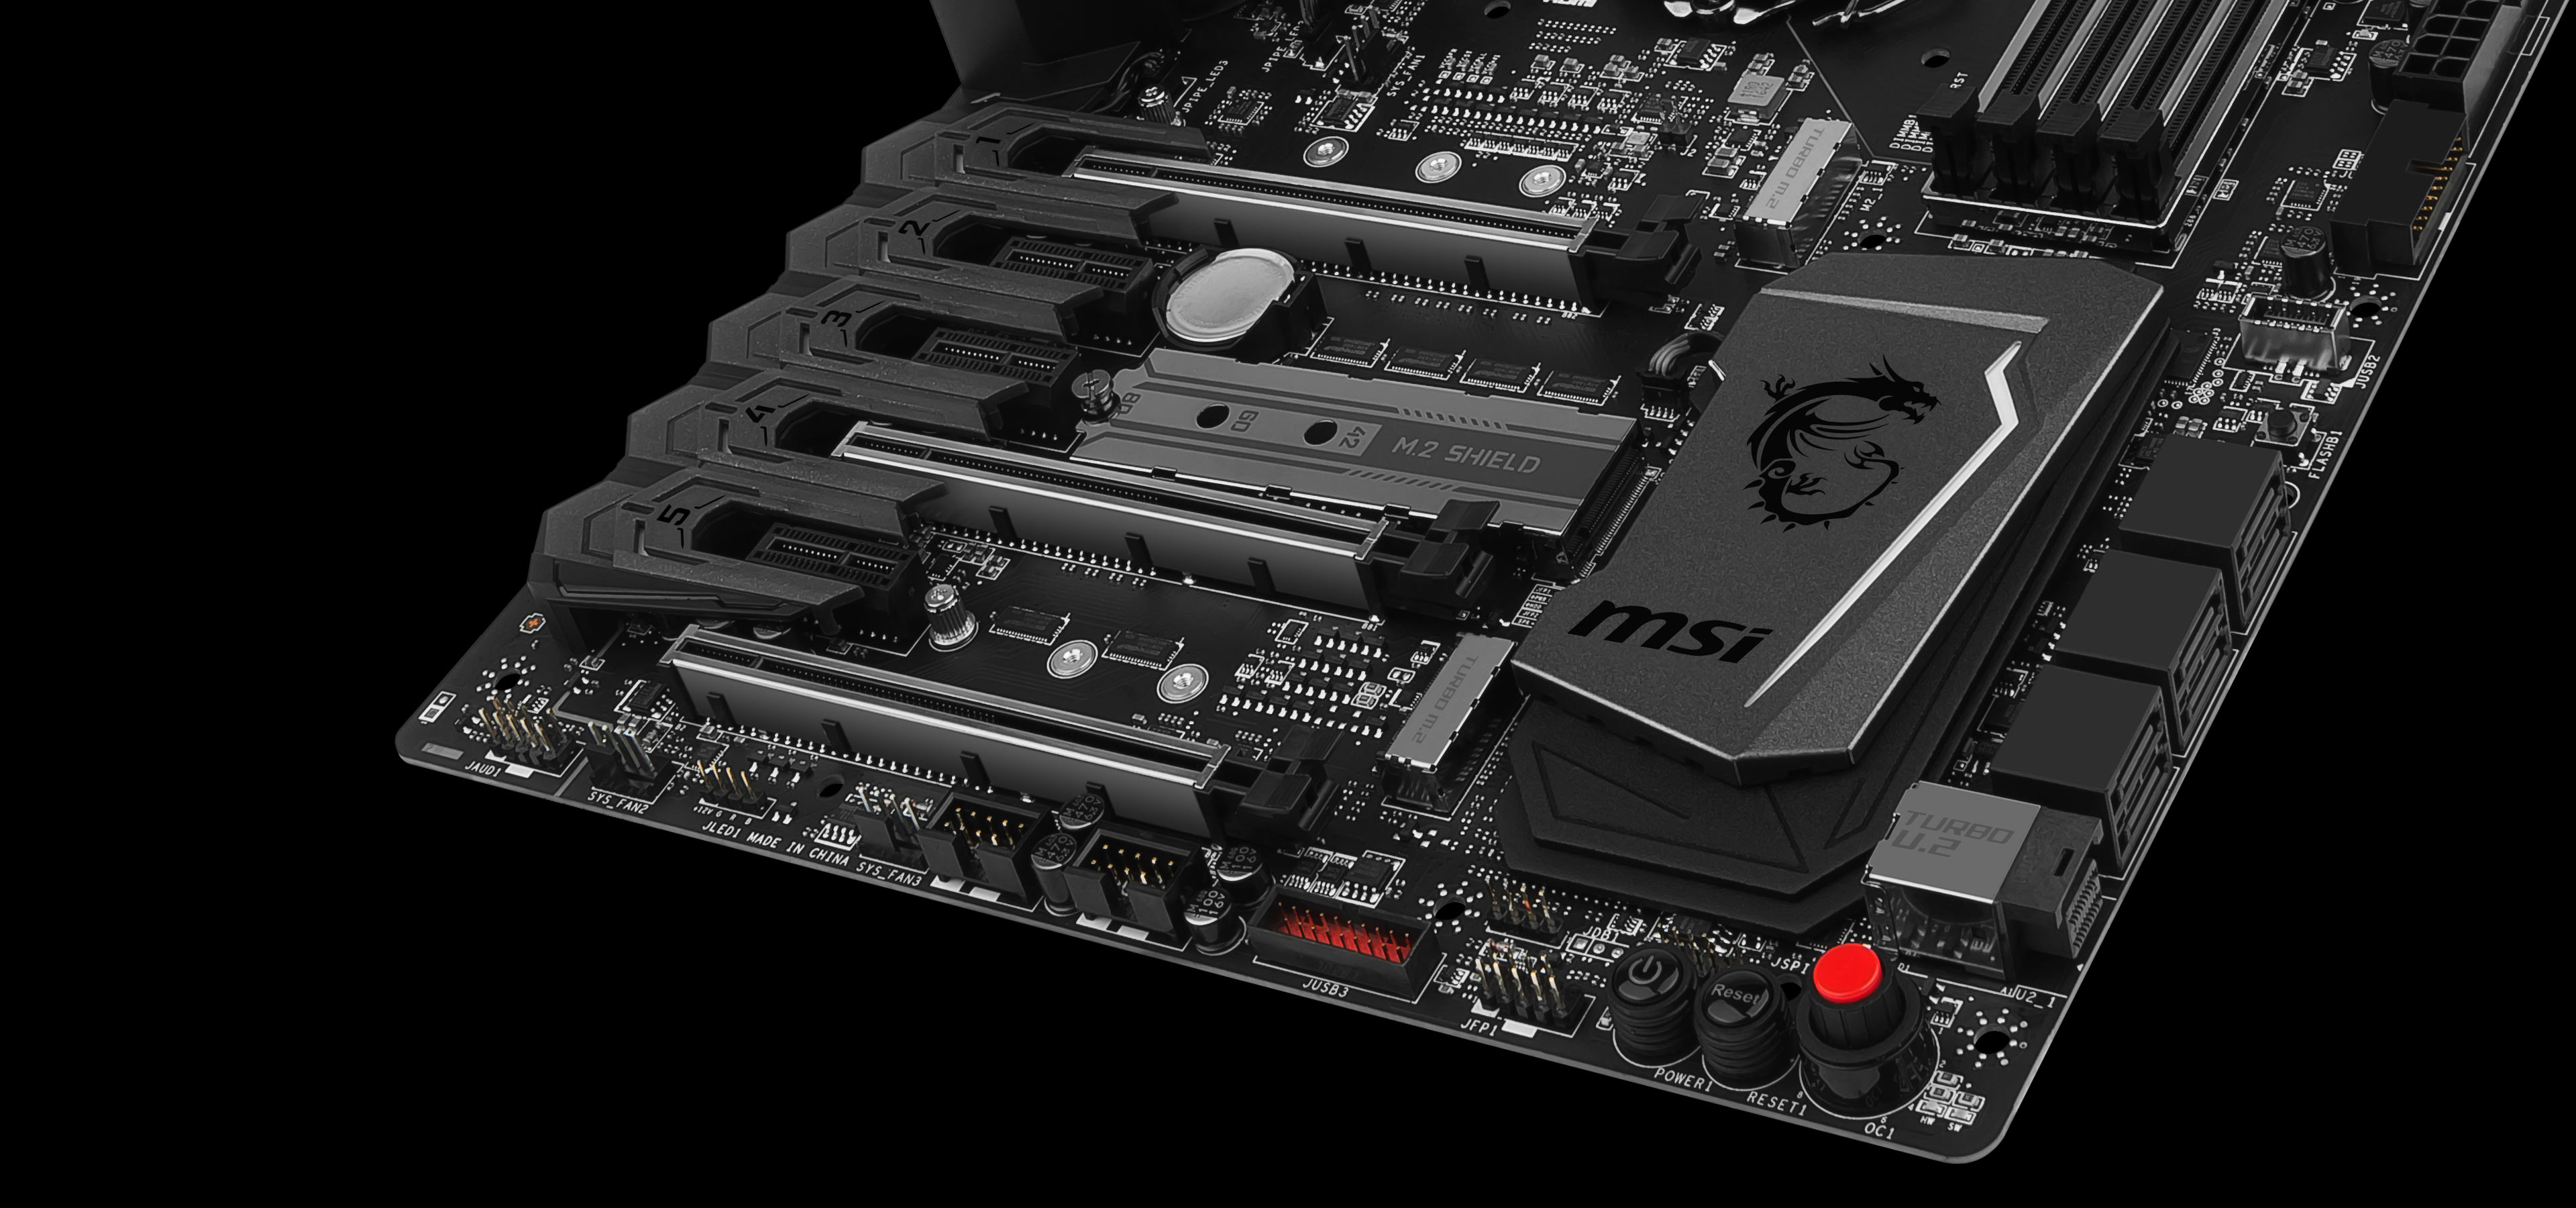 MSI Z270 Gaming M7 LGA1151 ATX Motherboard